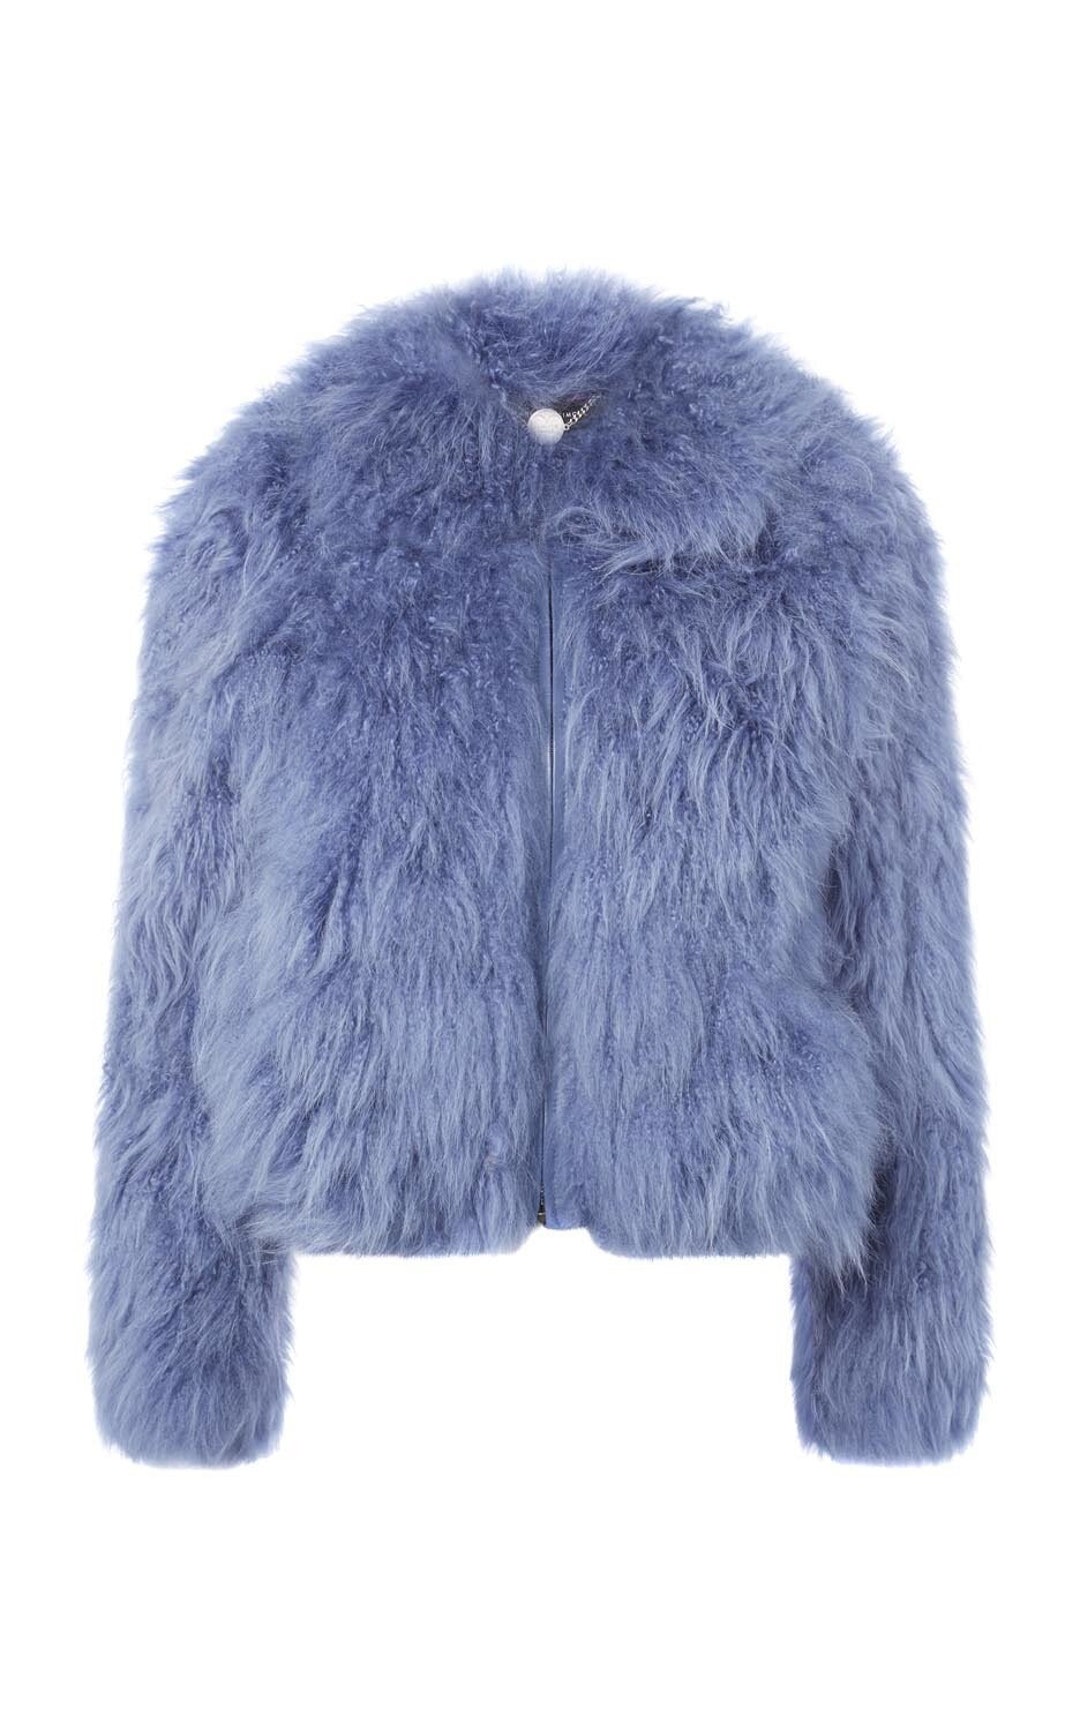 Women's Sky Blue Mink Fur Jacket Fast Shipping - Etsy